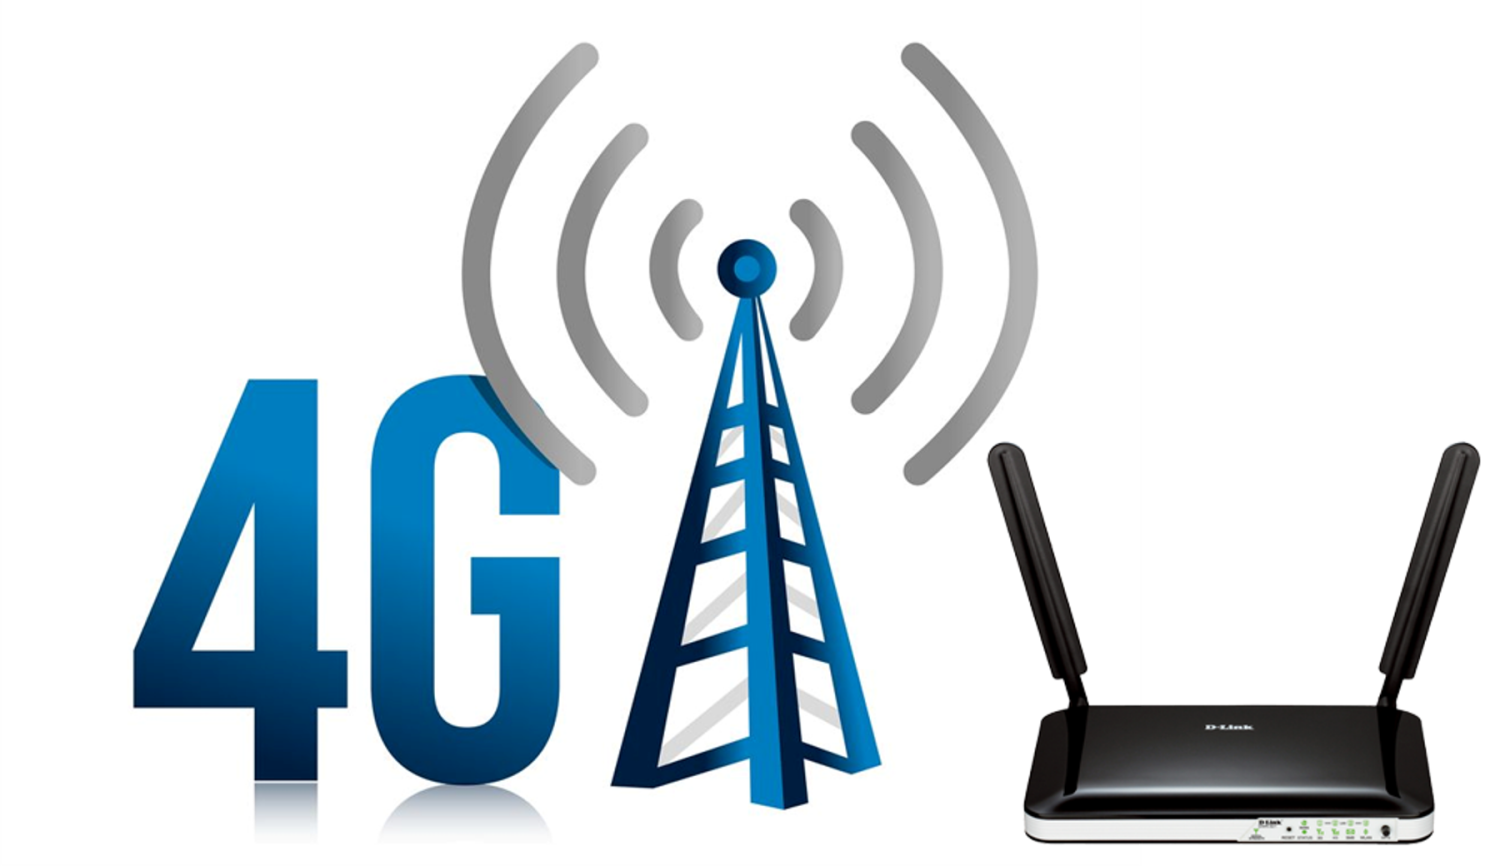 Мобильная связь ру. Сети сотовой связи 4g. 4g LTE. 3g 4g LTE device. Мобильная сеть 4g (WIMAX va LTE).